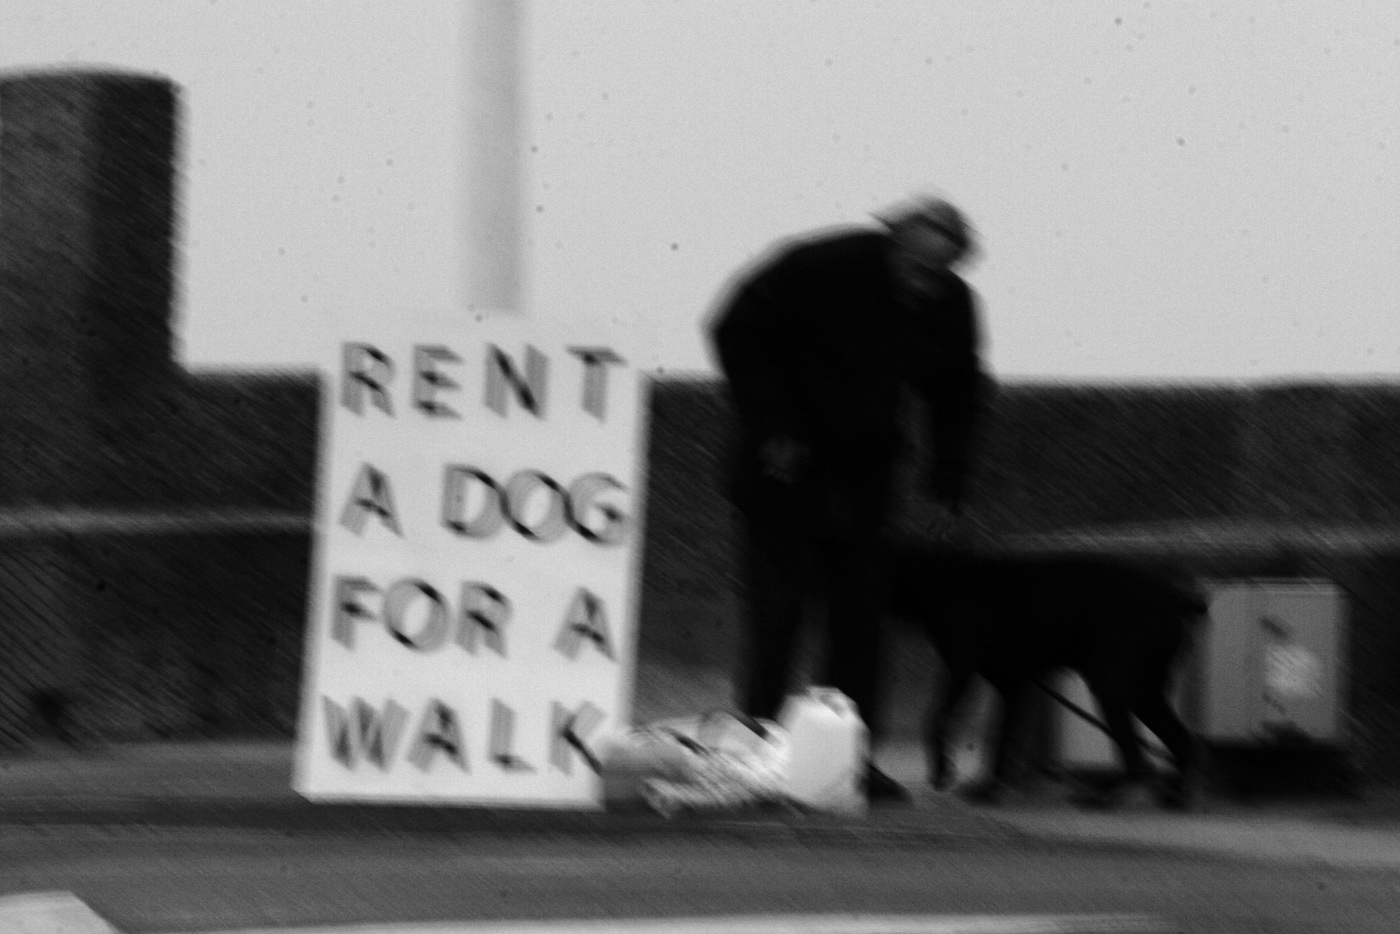 Rent a dog (3), Elisa Pône